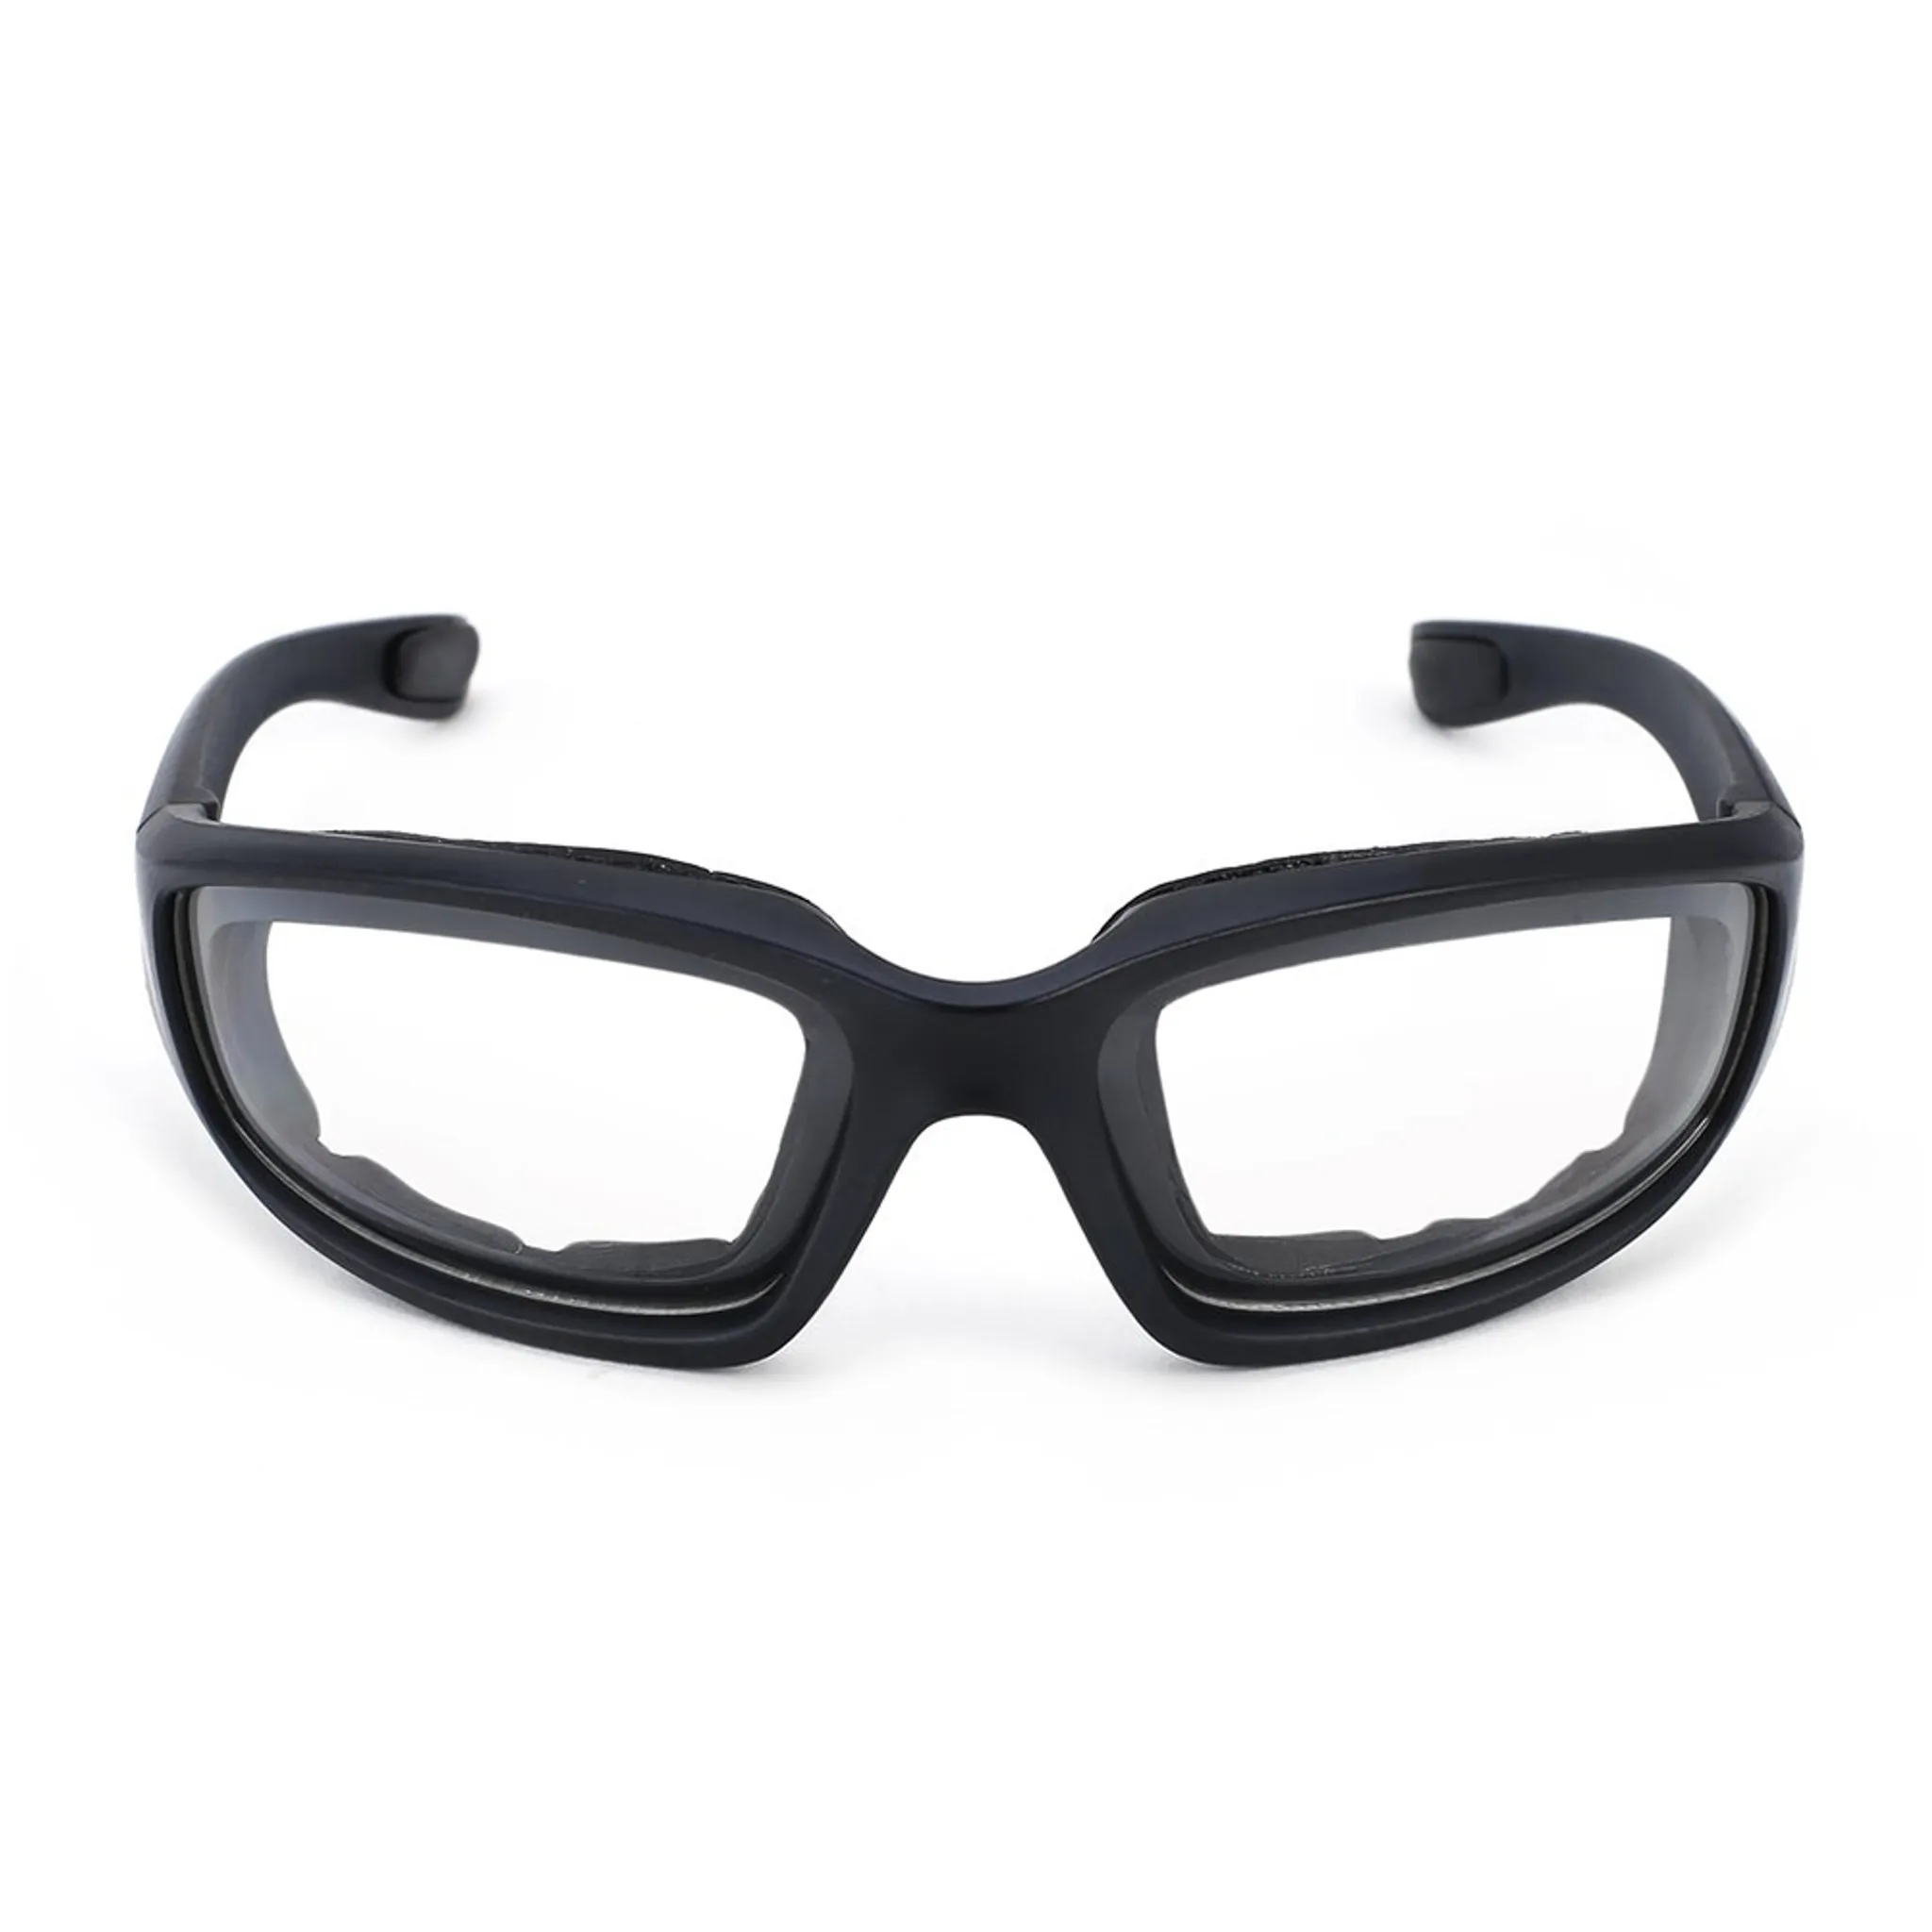 TKOOFN Motorradbrille schutzbrille Winddicht Staubschutz Brille Farbige Linse PC+TPU Materialie für Straßenrennen Radfahren Skifahren 